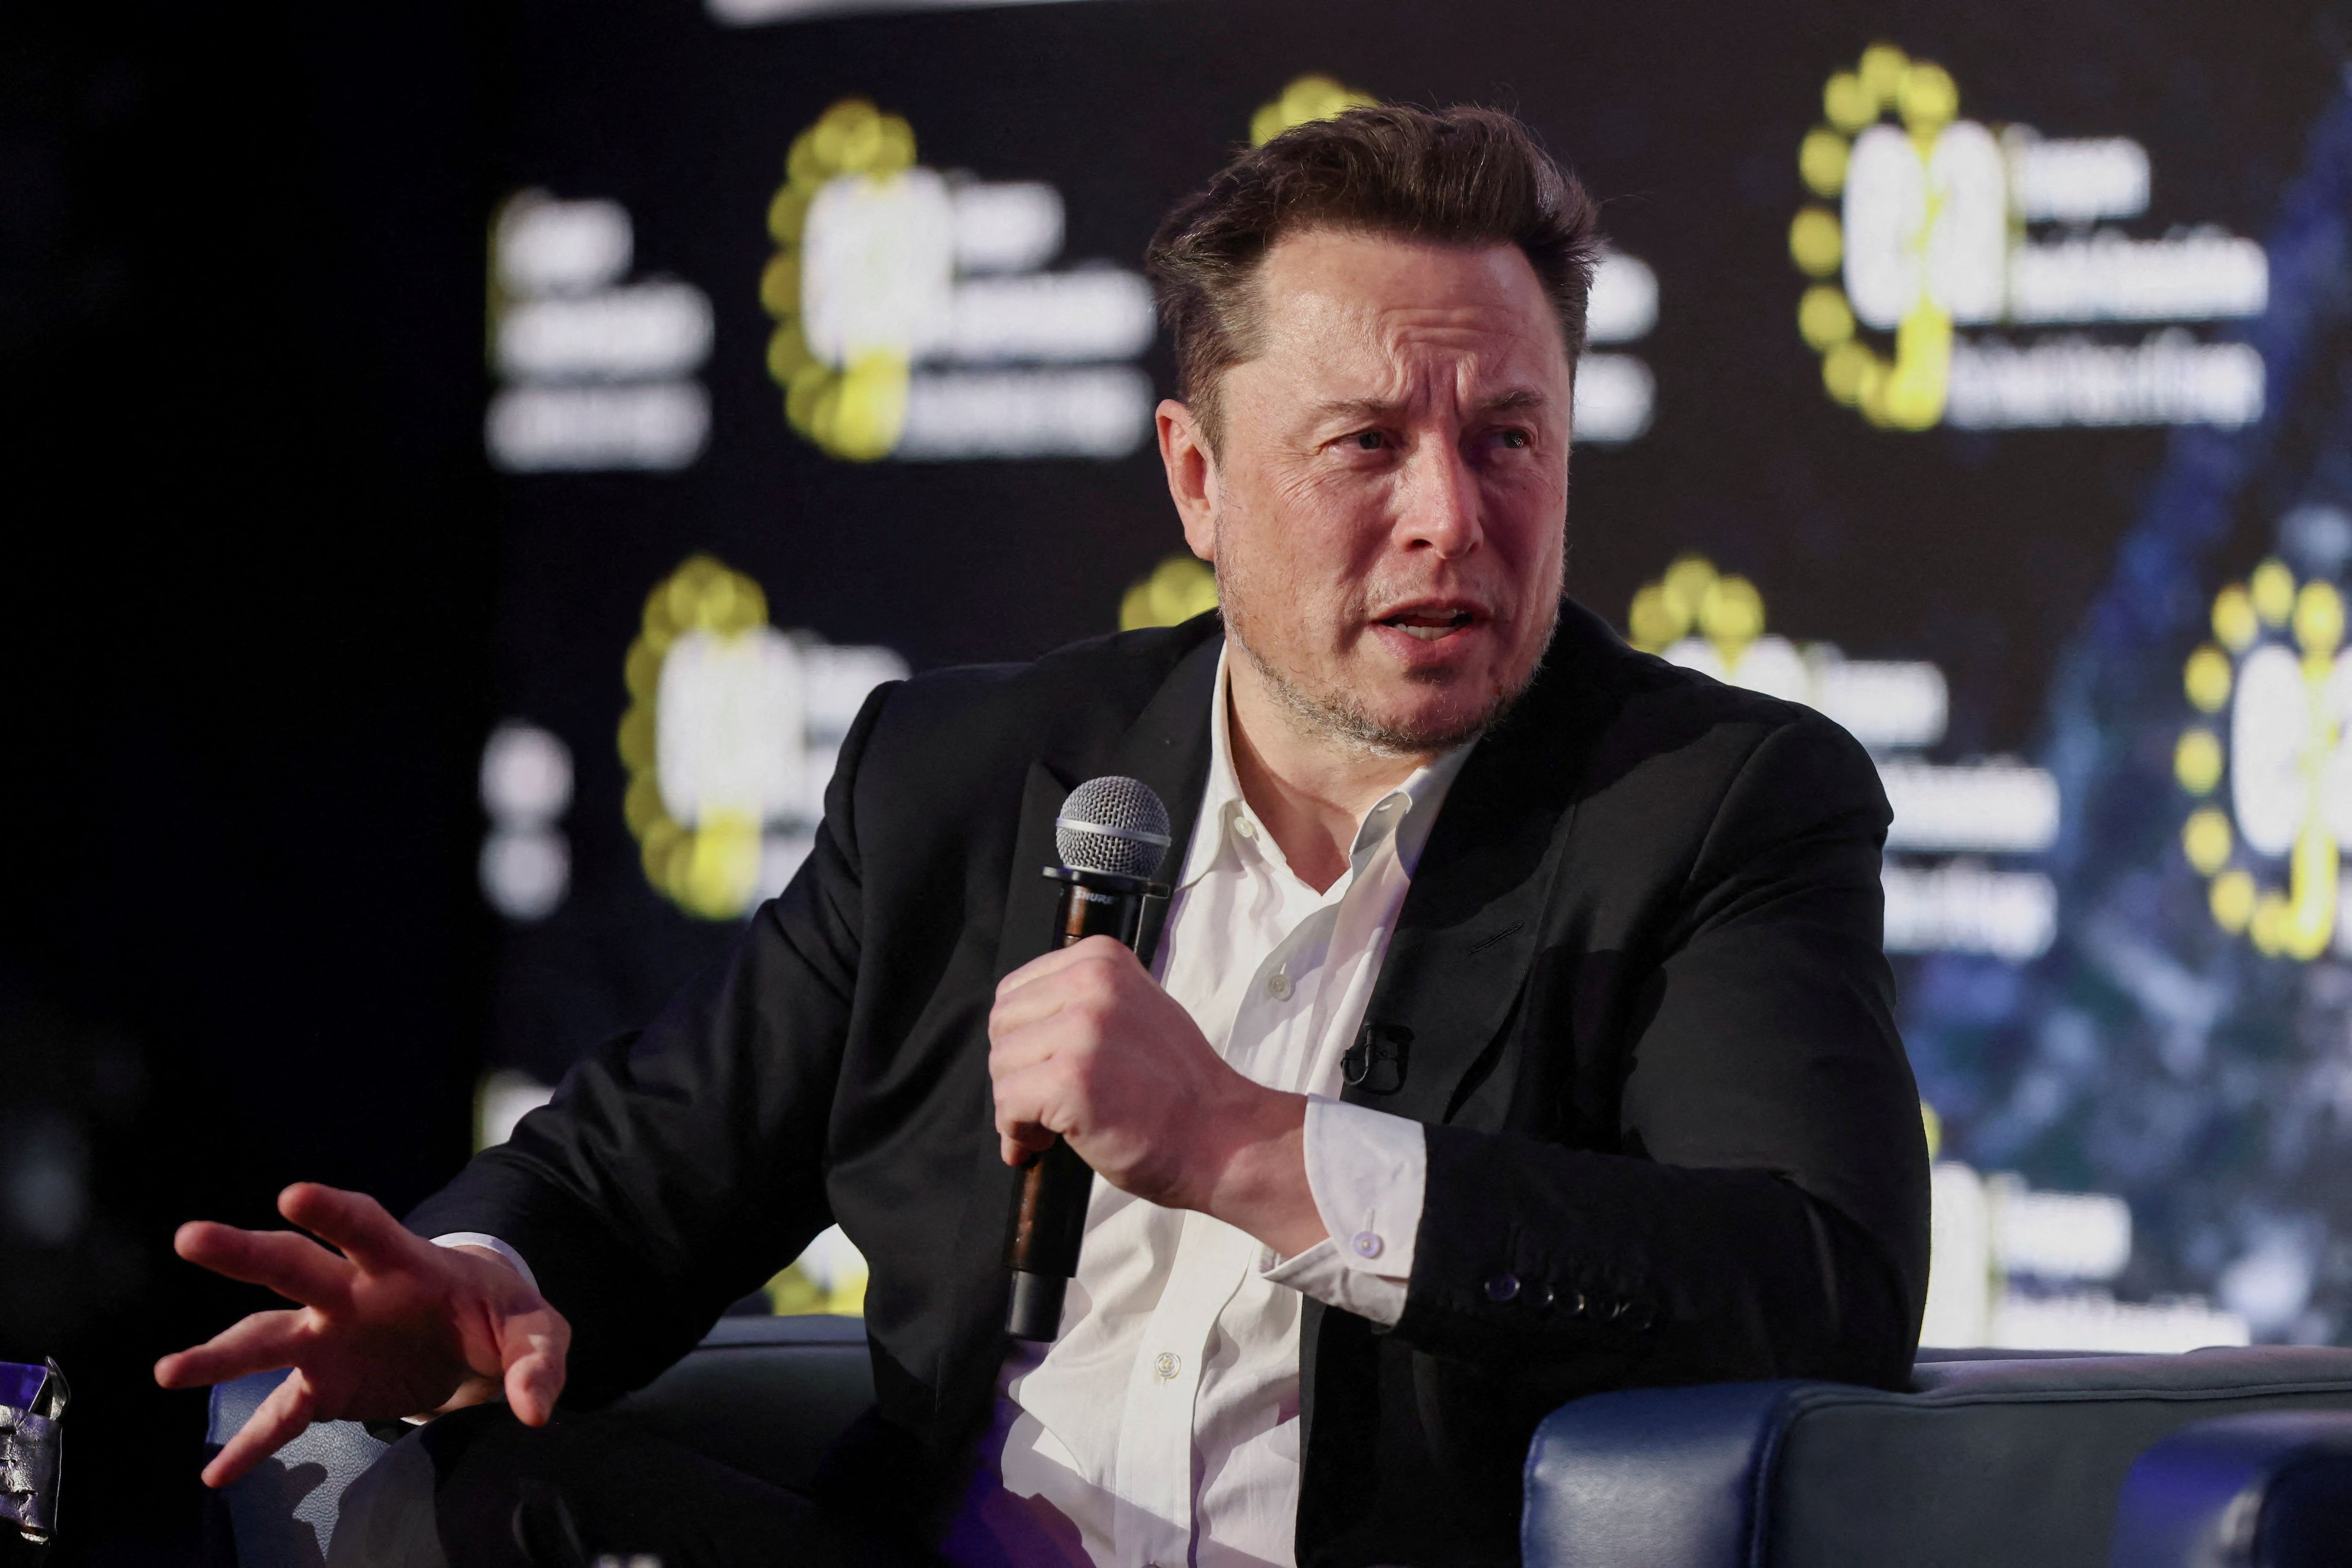 El liderazgo personalista de Elon Musk y la reacción a sus acciones y palabras también juegan un papel crucial en la valoración de sus empresas. (Reuters/Lukasz Glowala)